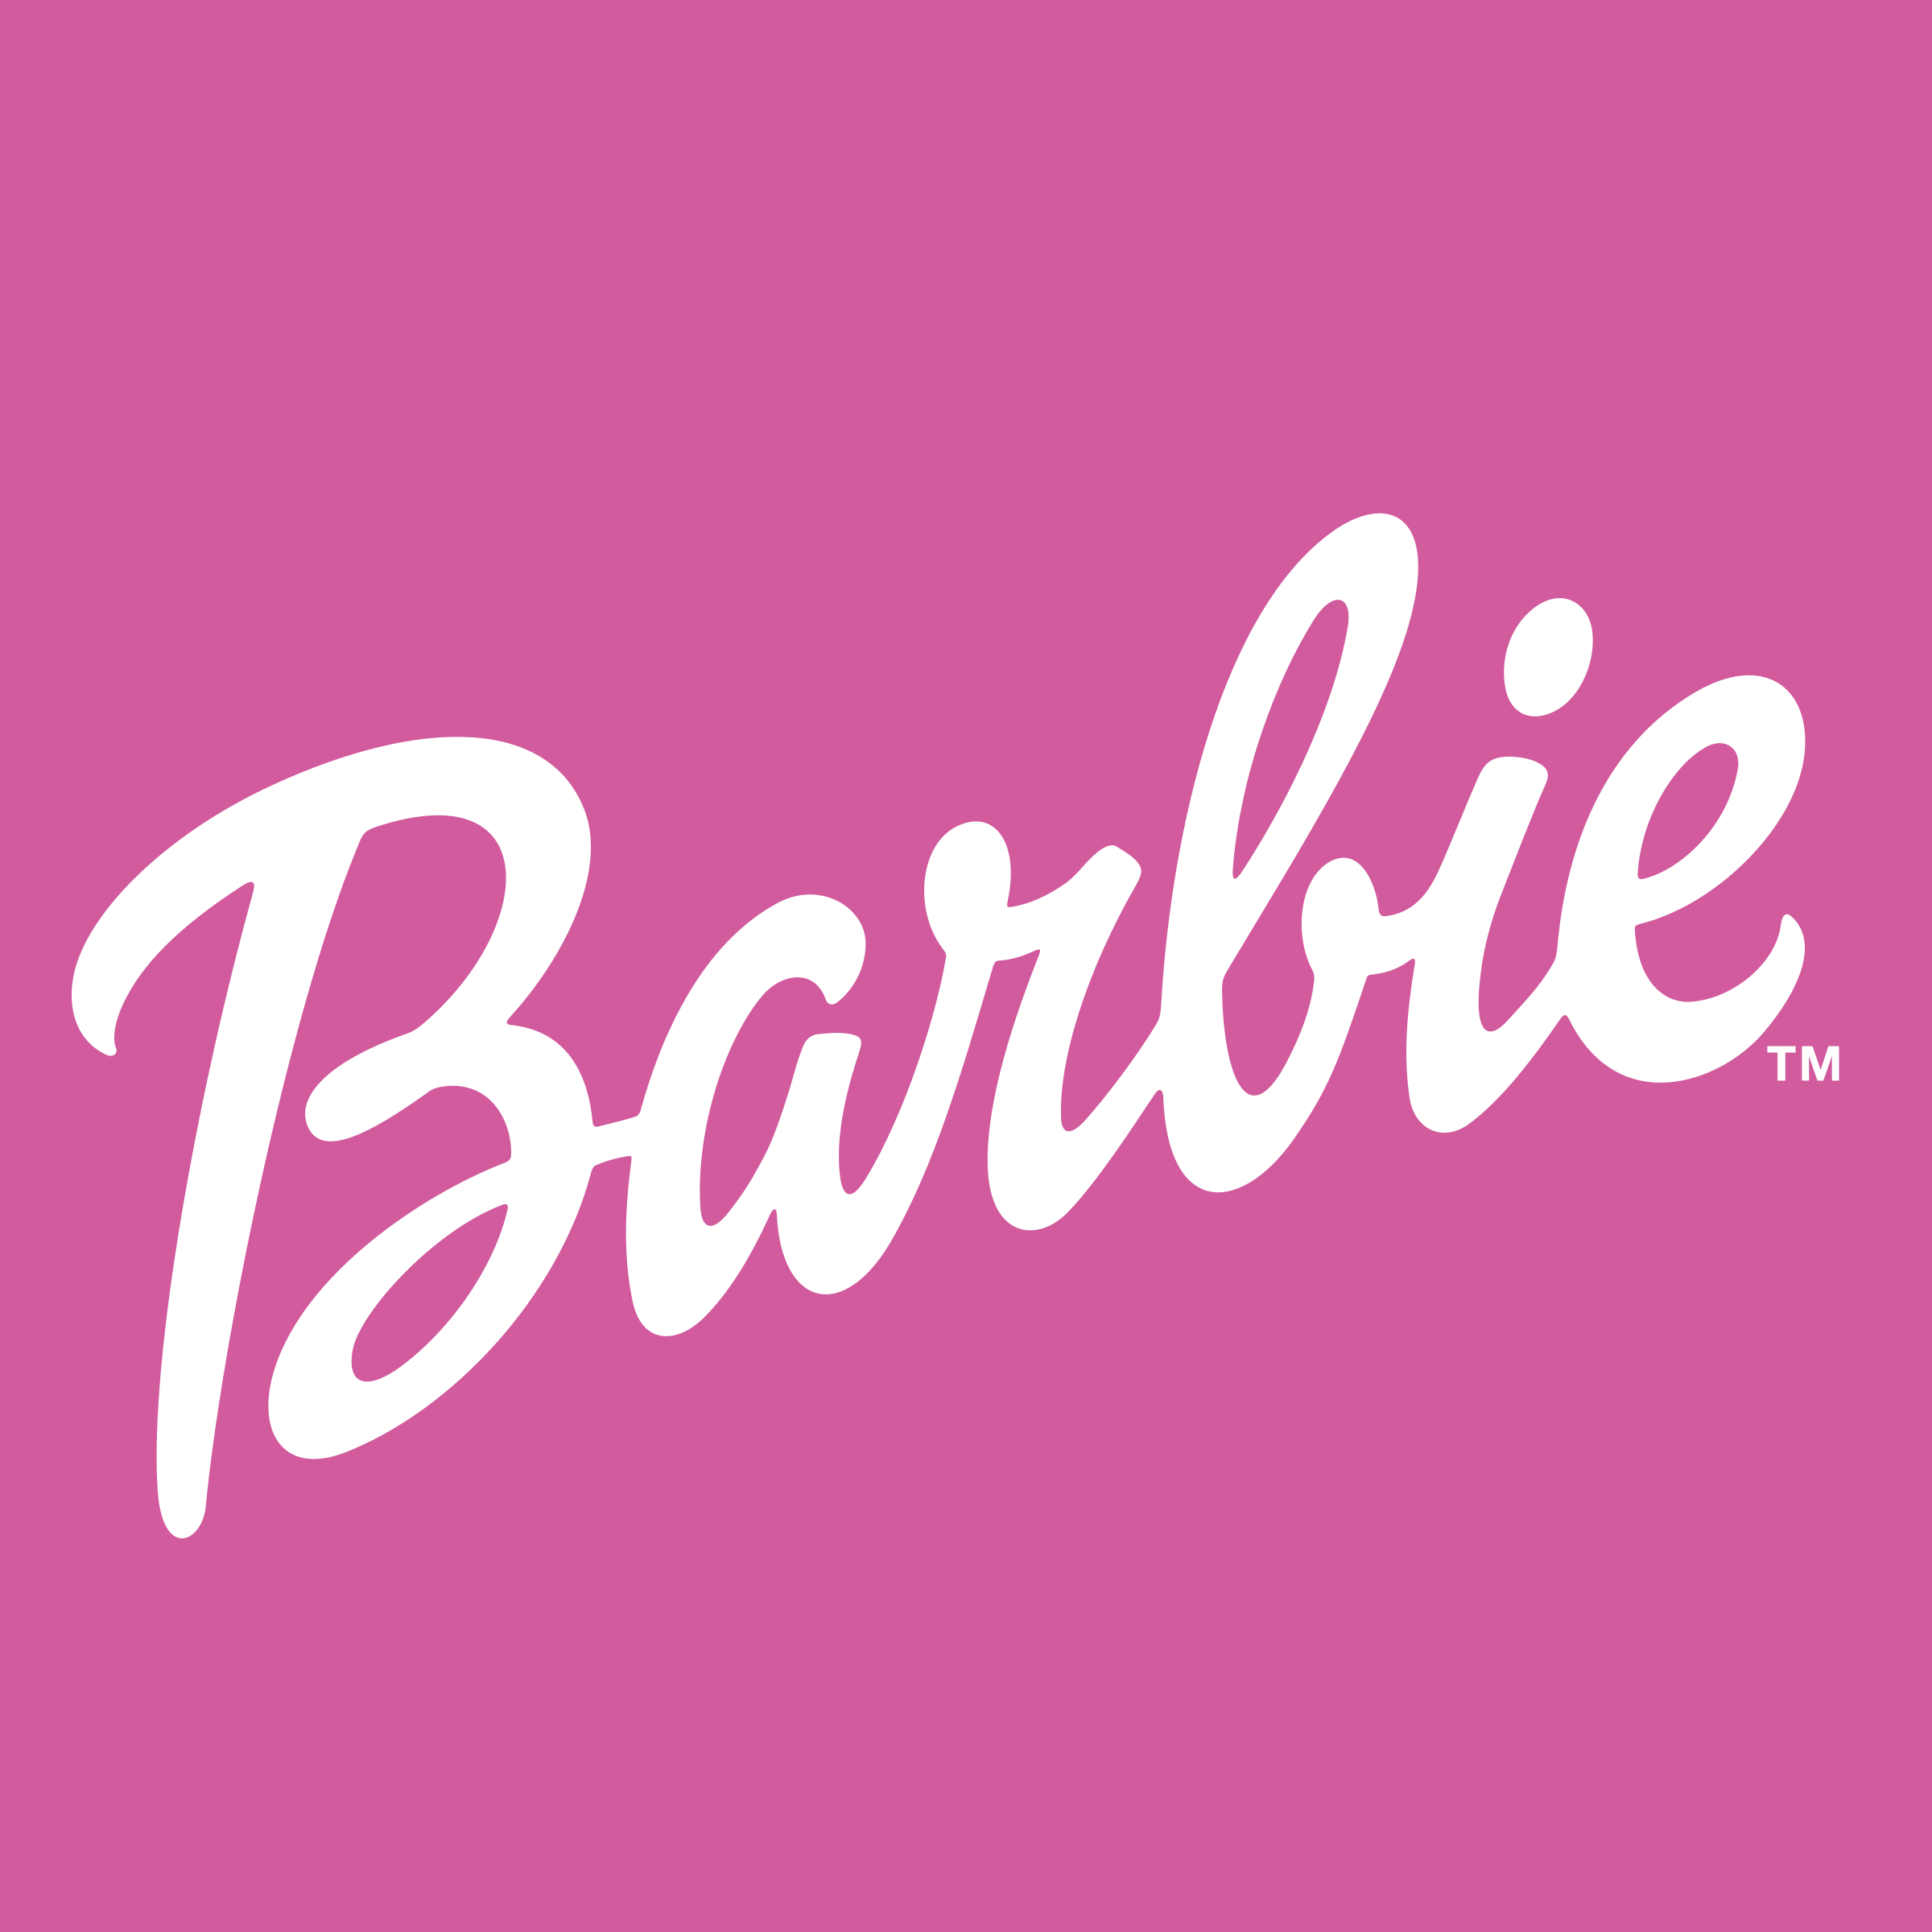 Barbie.com Logo - Barbie Logo PNG Transparent & SVG Vector - Freebie Supply